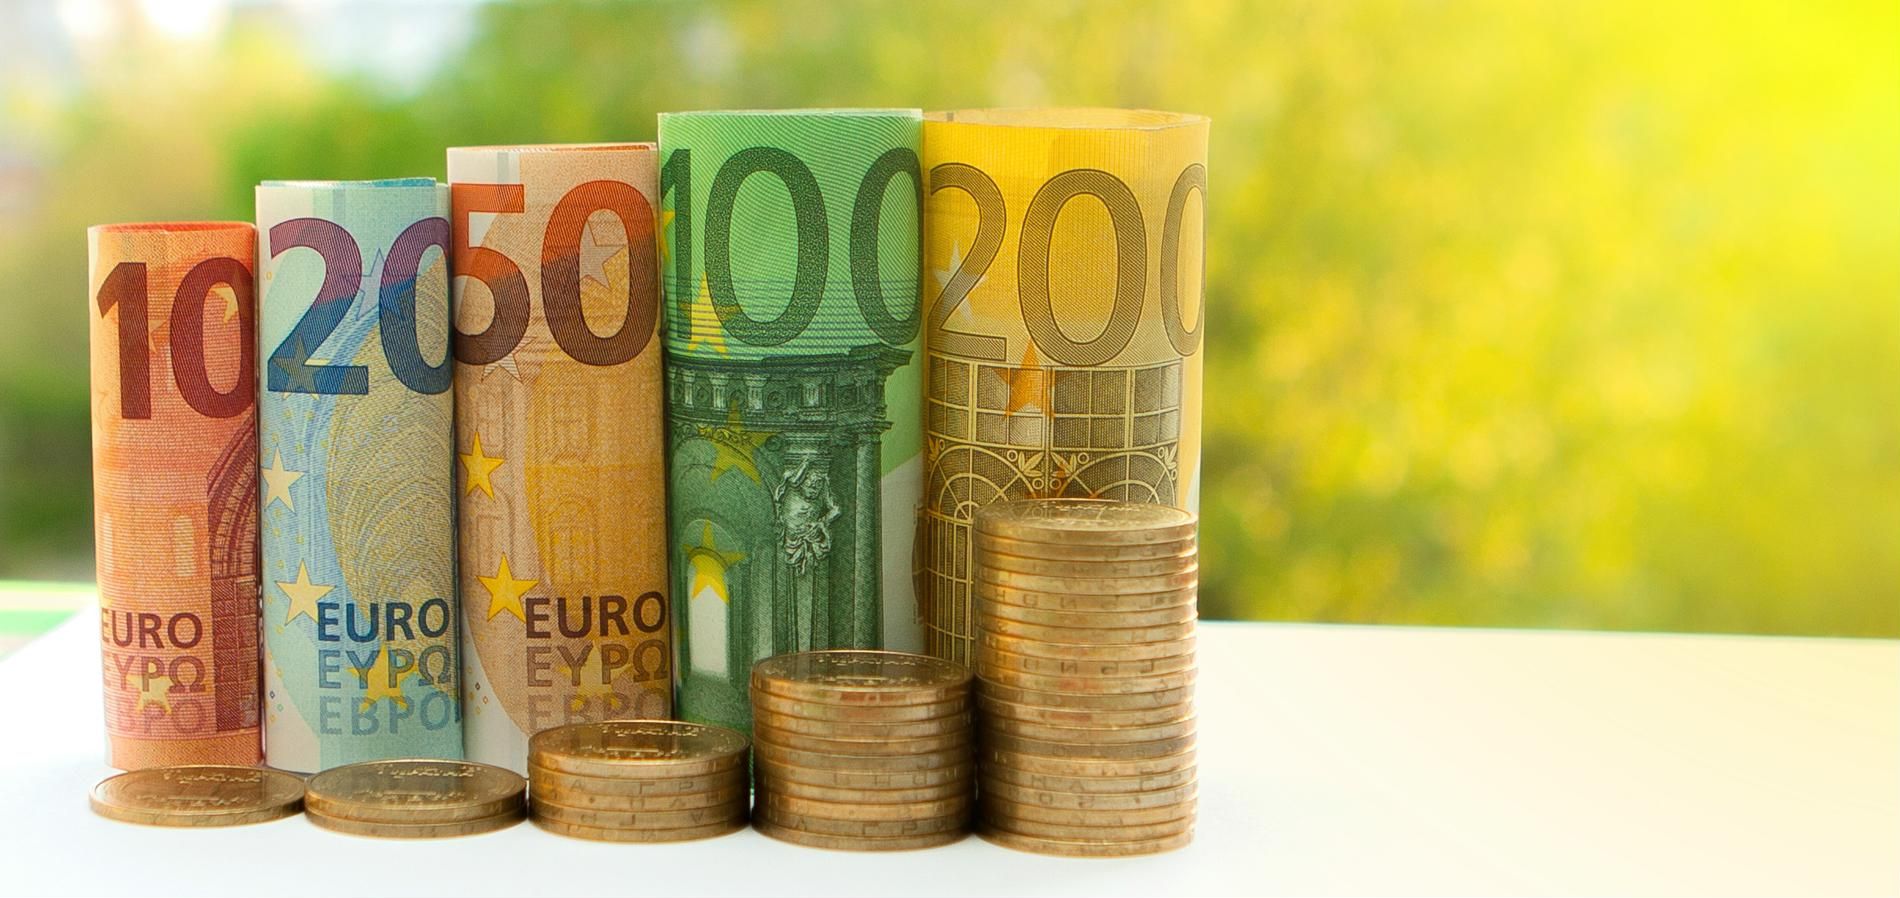 Германия може да доведе еврото до срив, смятат немски икономисти